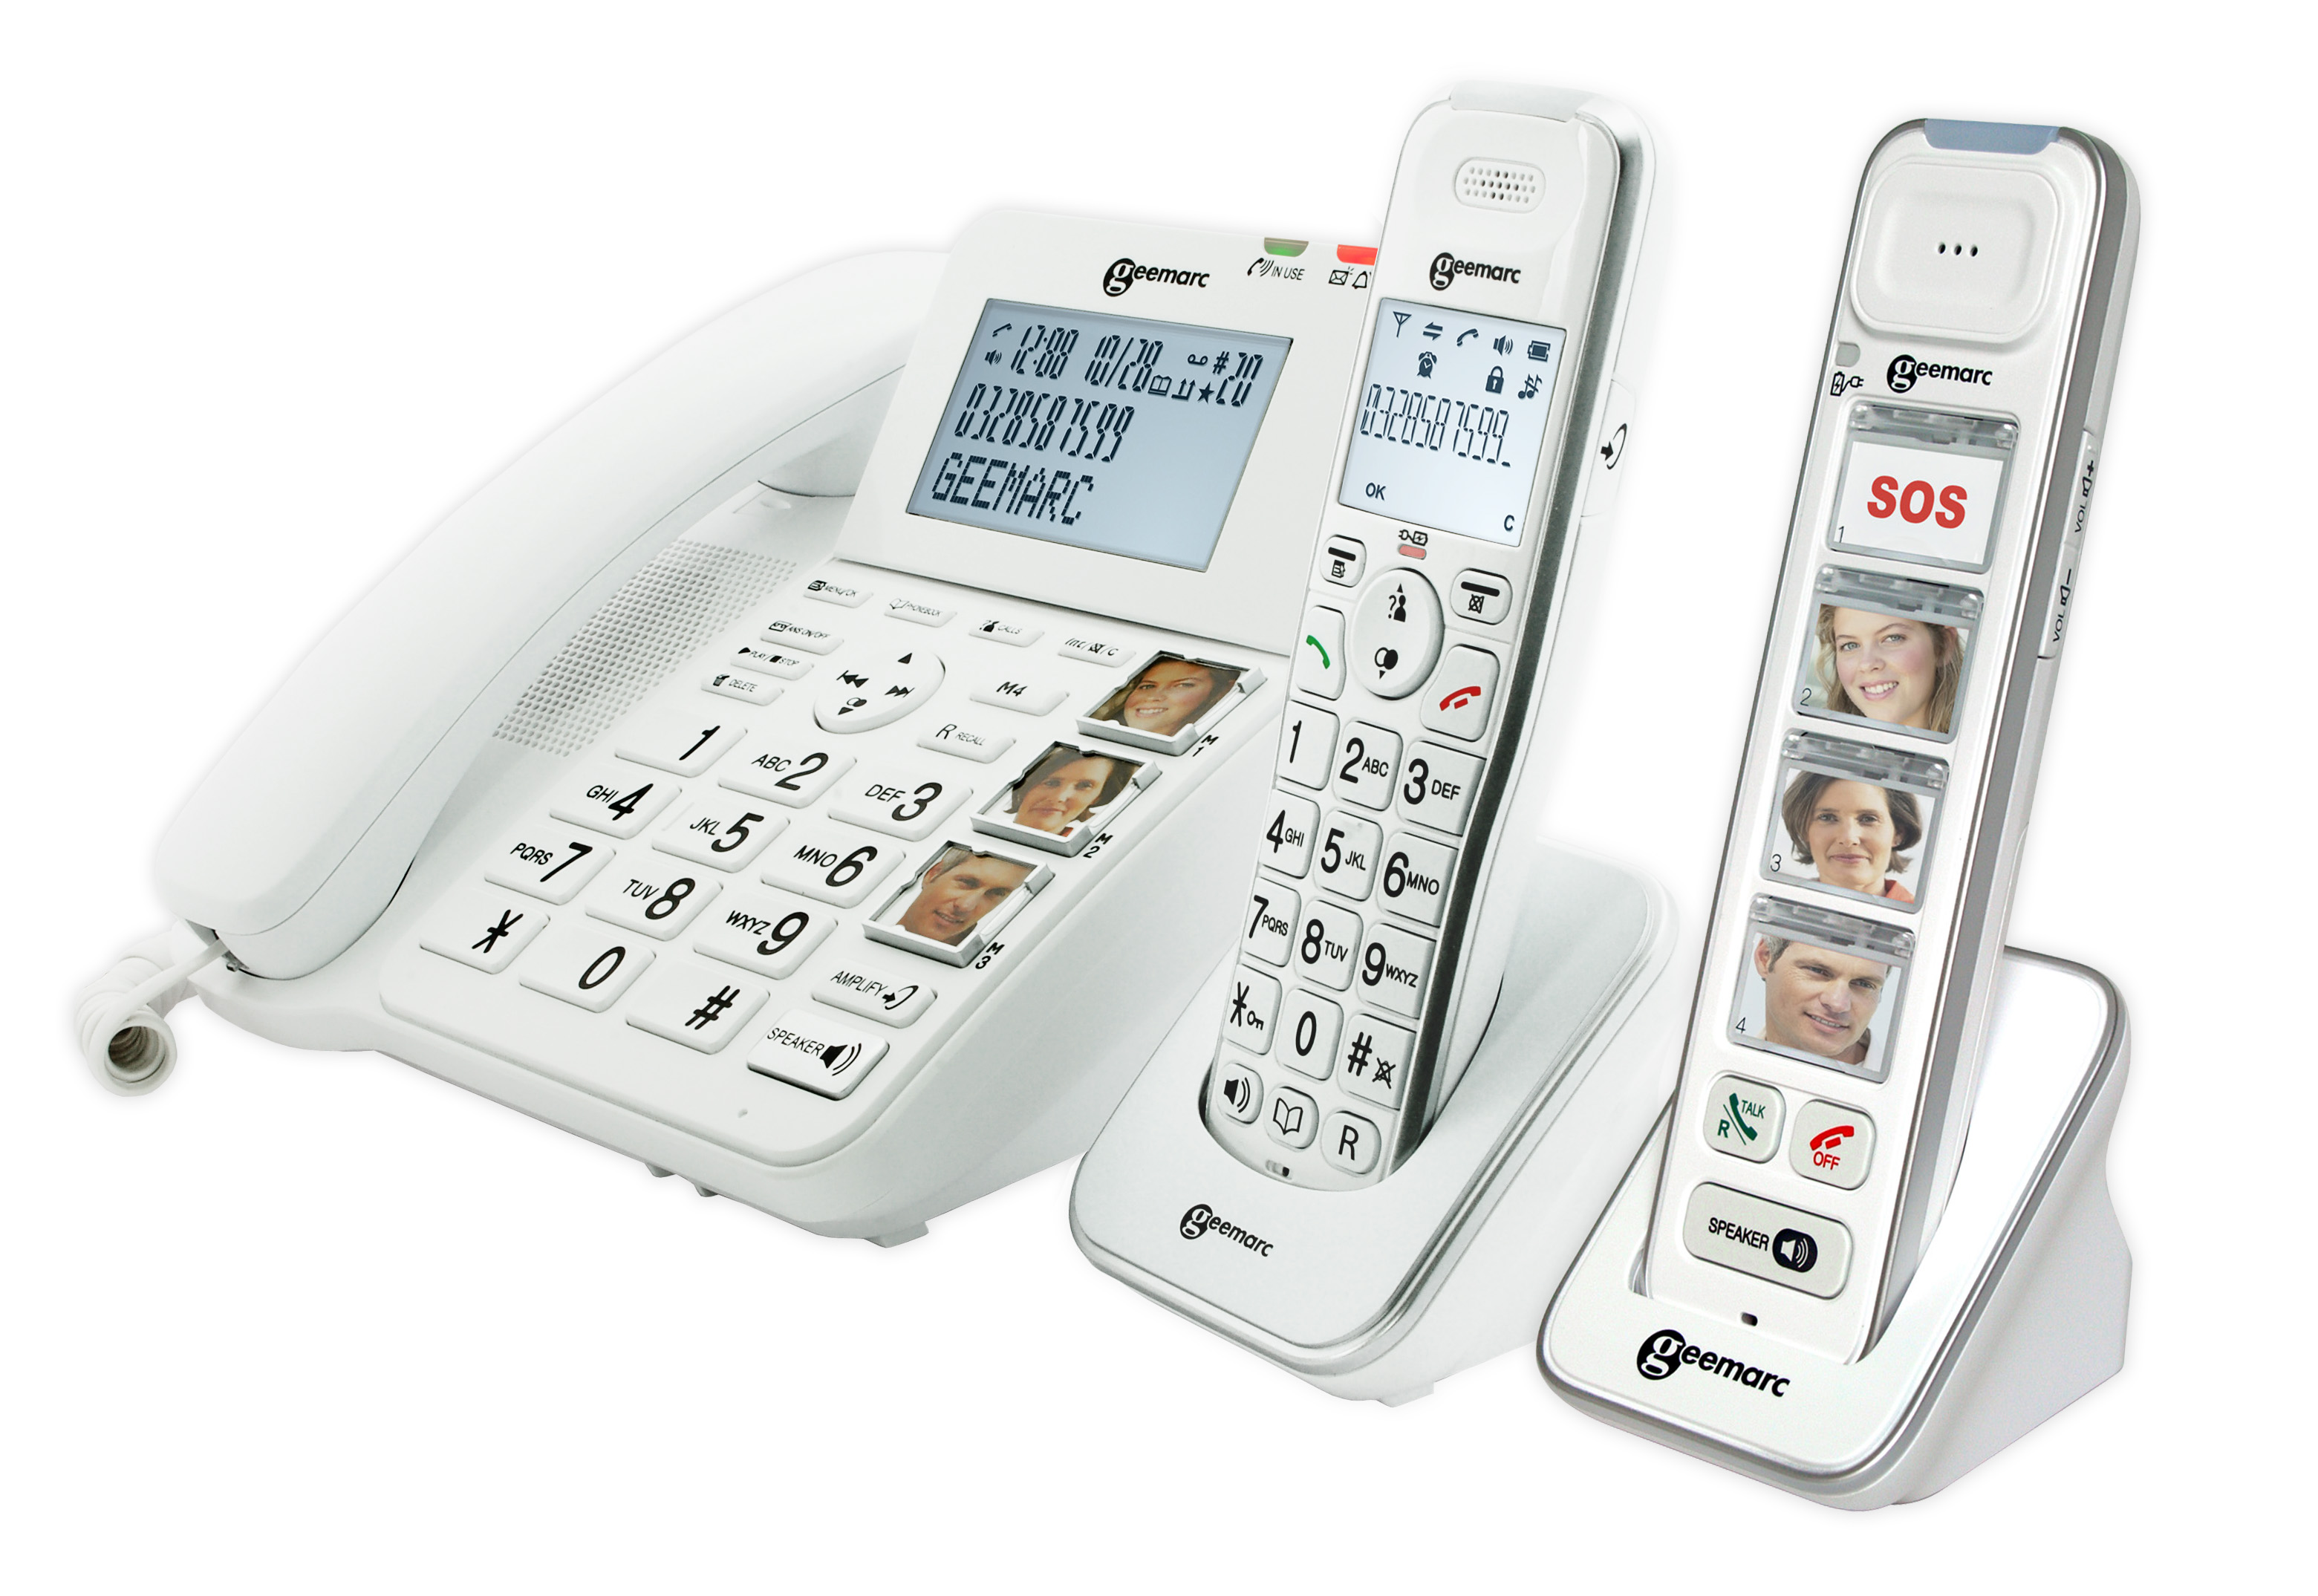 Acheter Téléphone fixe filaire de bureau, téléphone fixe à gros bouton pour personnes  âgées, téléphone avec écran LCD